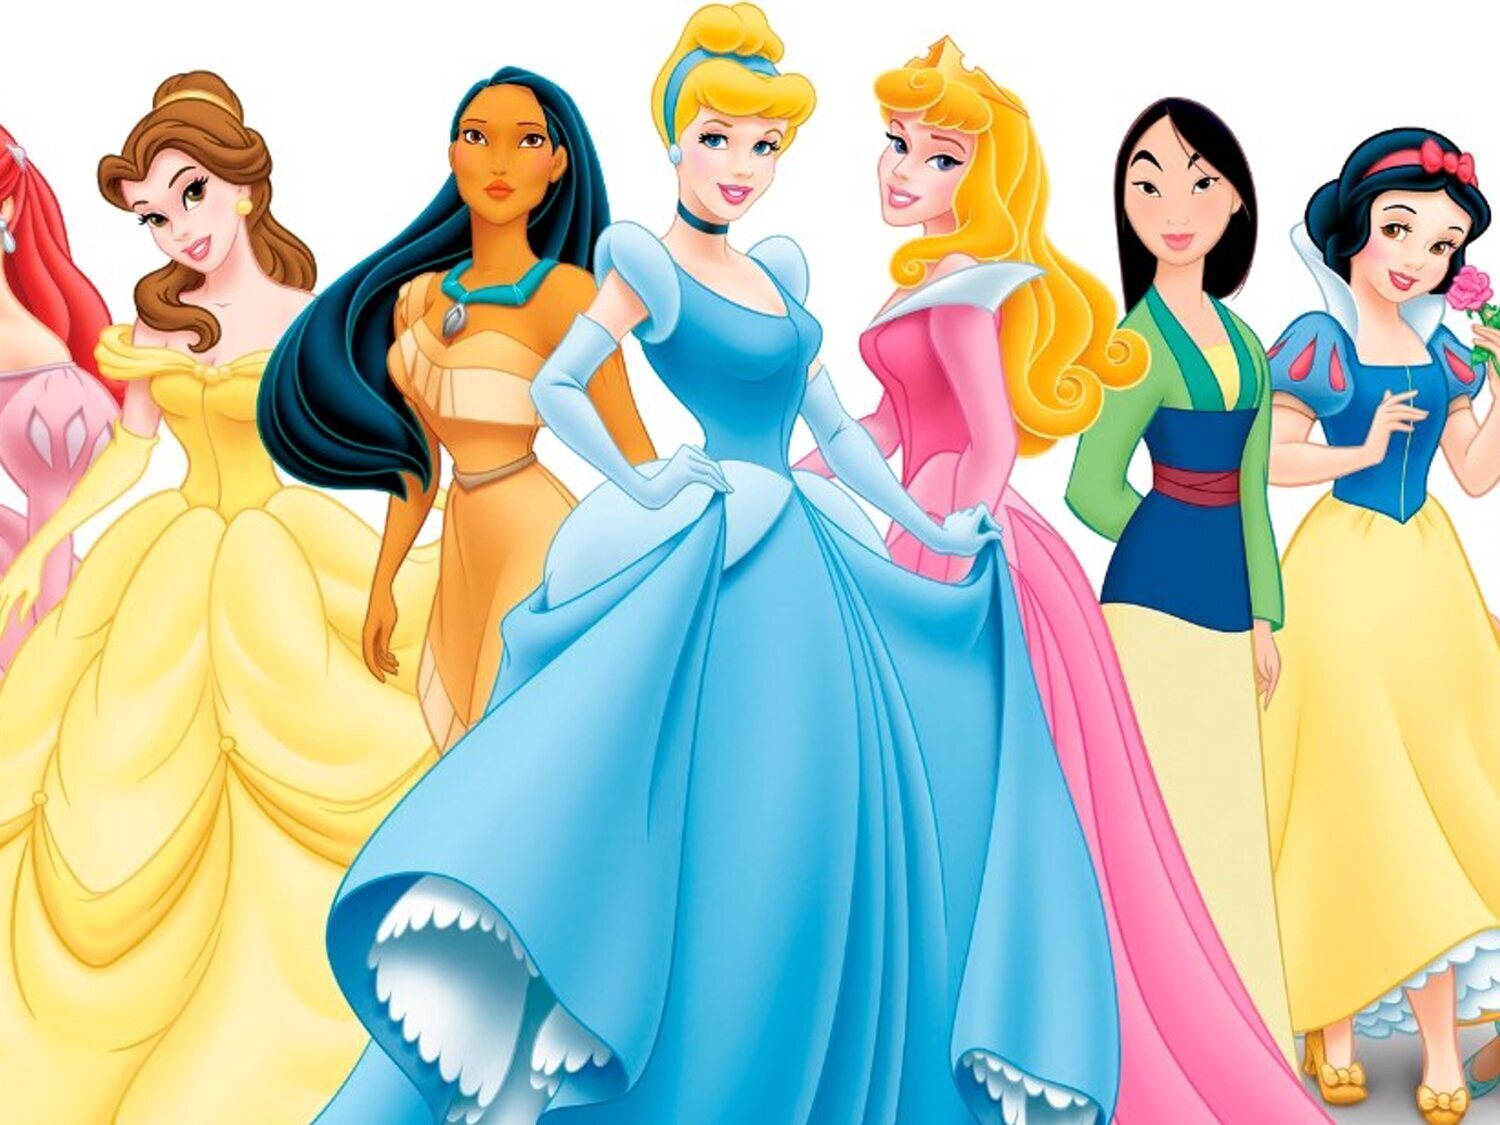 Un vídeo viral analiza los posibles problemas de salud mental de las princesas Disney